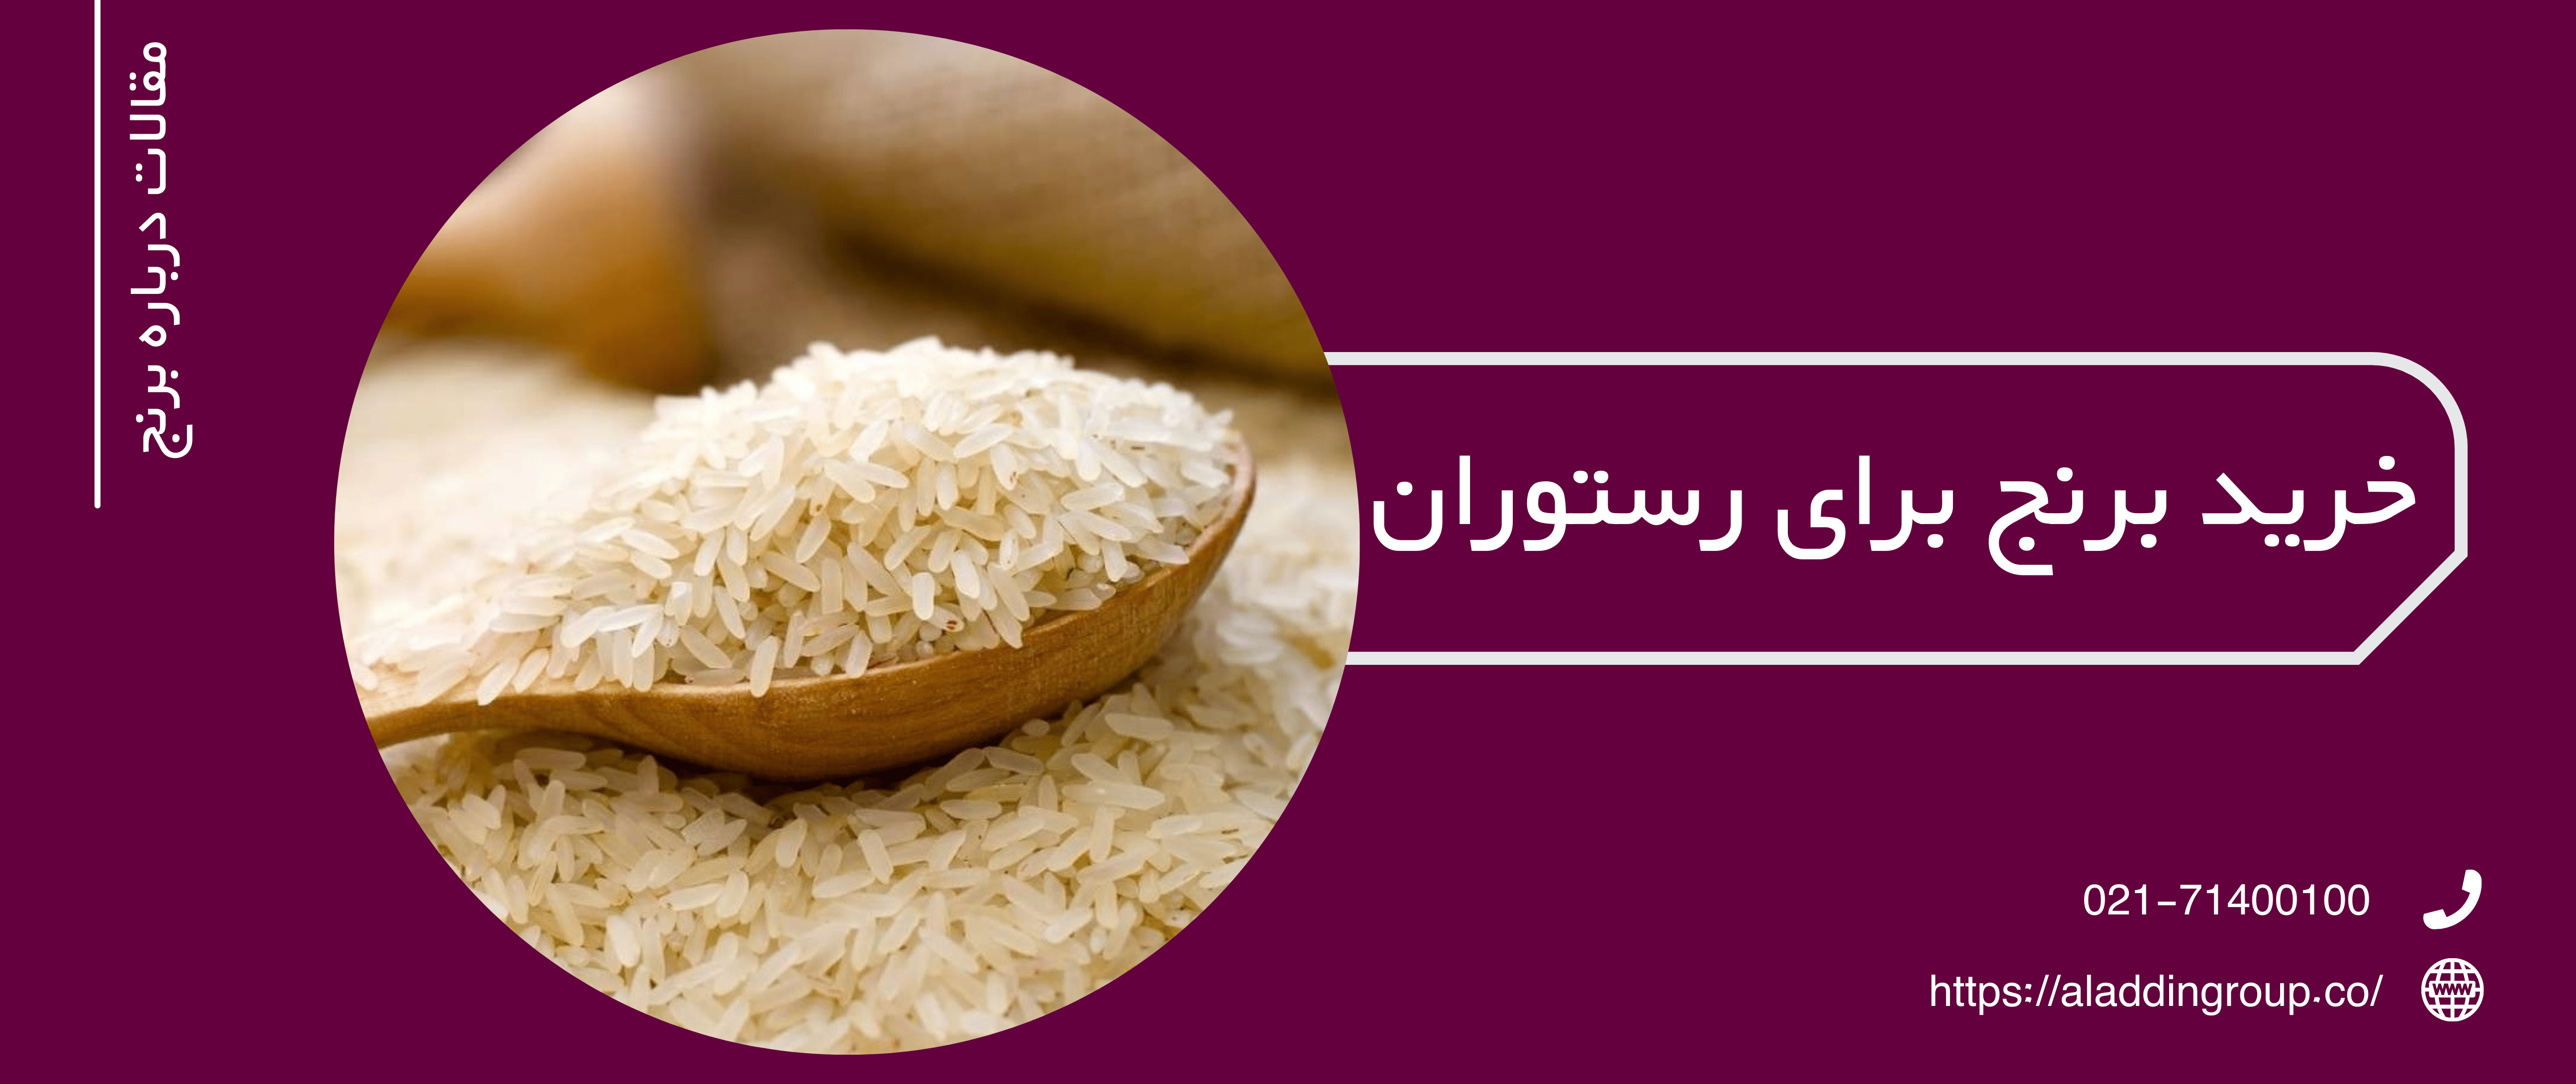 بهترین برنج برای رستوران | فروش برنج به رستوران ها